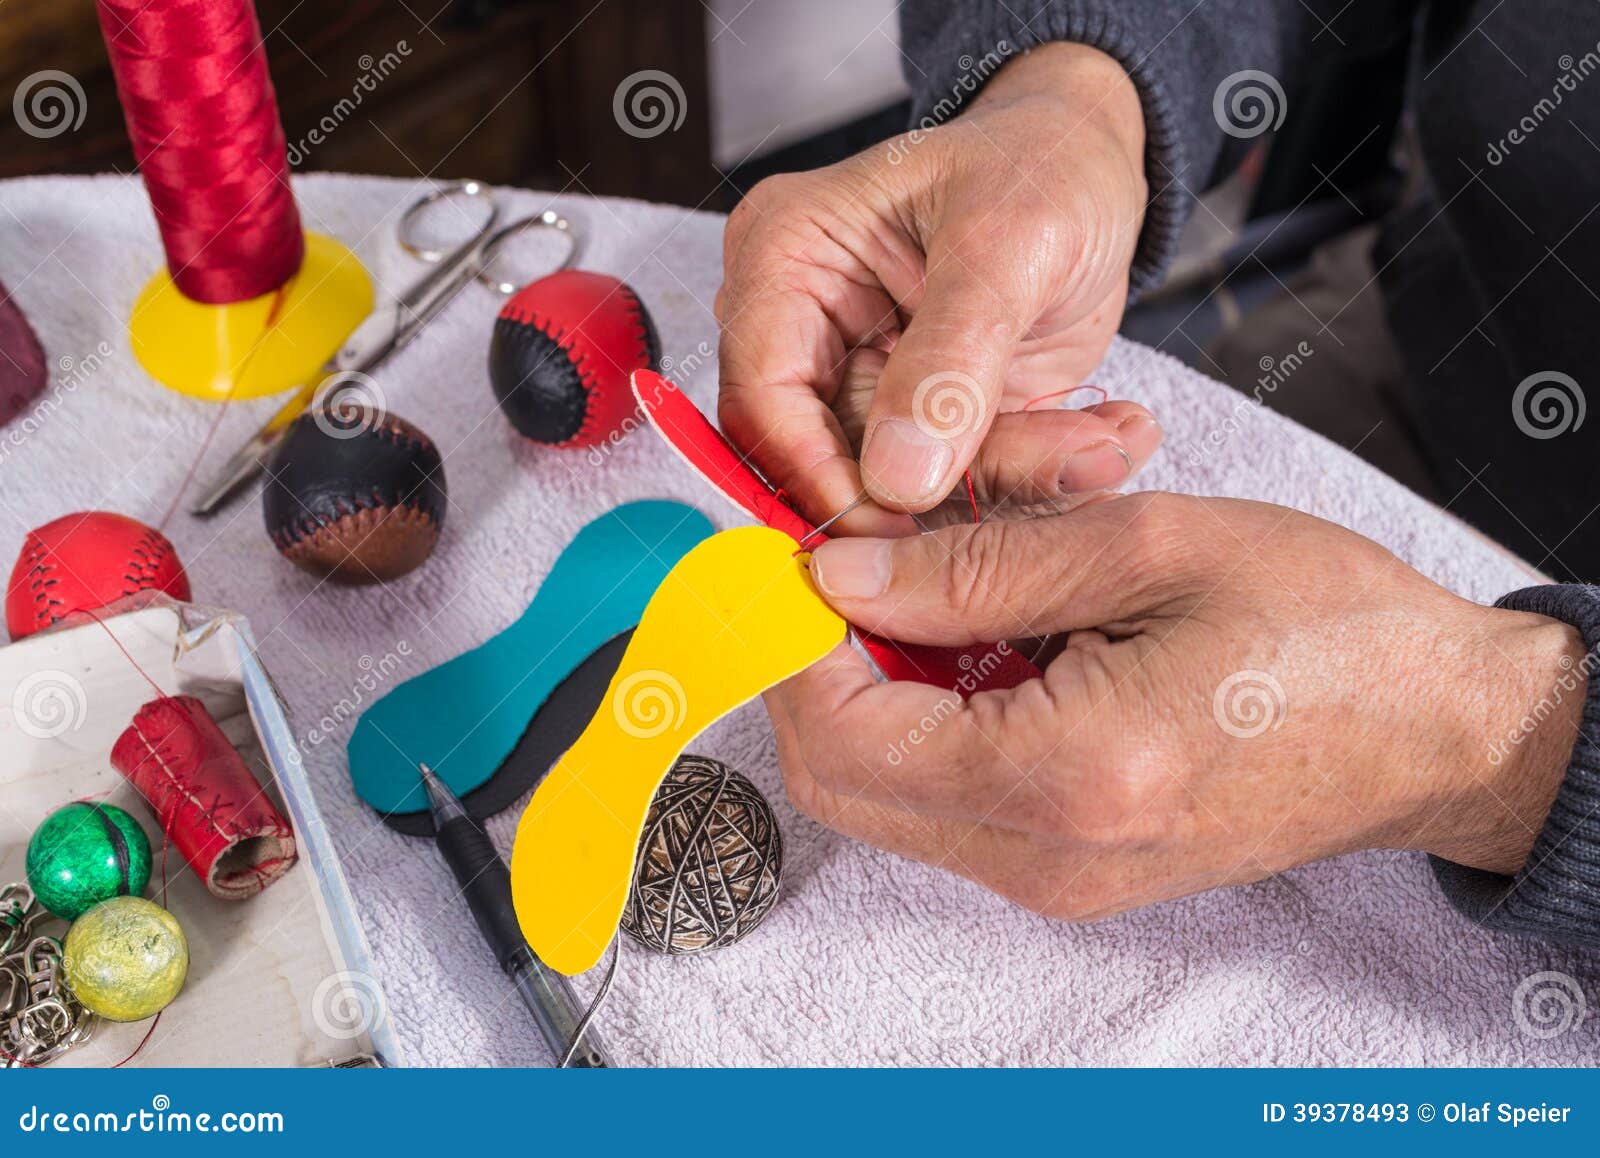 hands sewing pelota balls